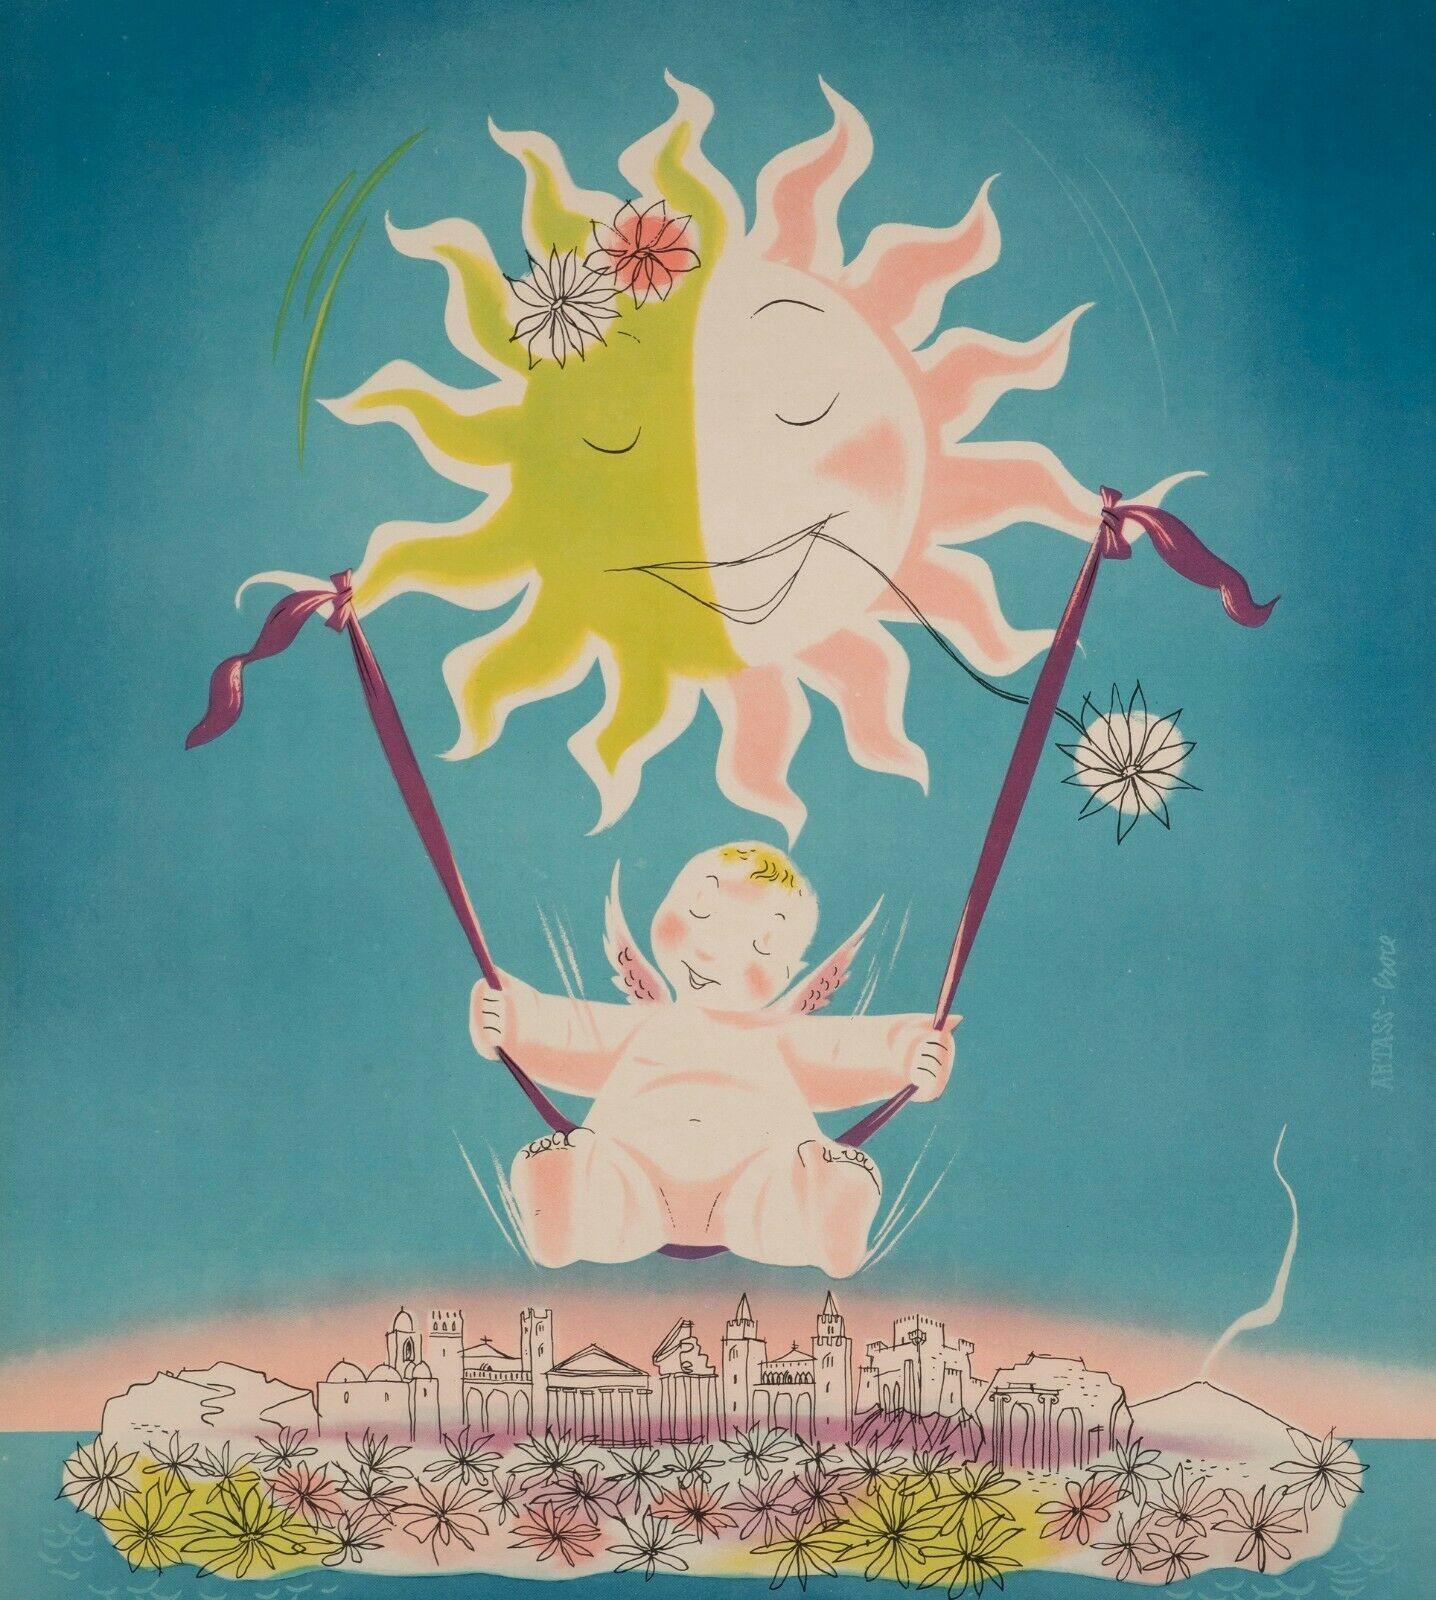 Affiche originale-Artass Croce-Sicile-Palermo-Catane-Syracuse, 1952

Affiche pour promouvoir le tourisme en Sicile (Italie). Sur l'affiche, un ange se balance sous le soleil de Sicile.

Informations supplémentaires :
Matériaux et techniques :